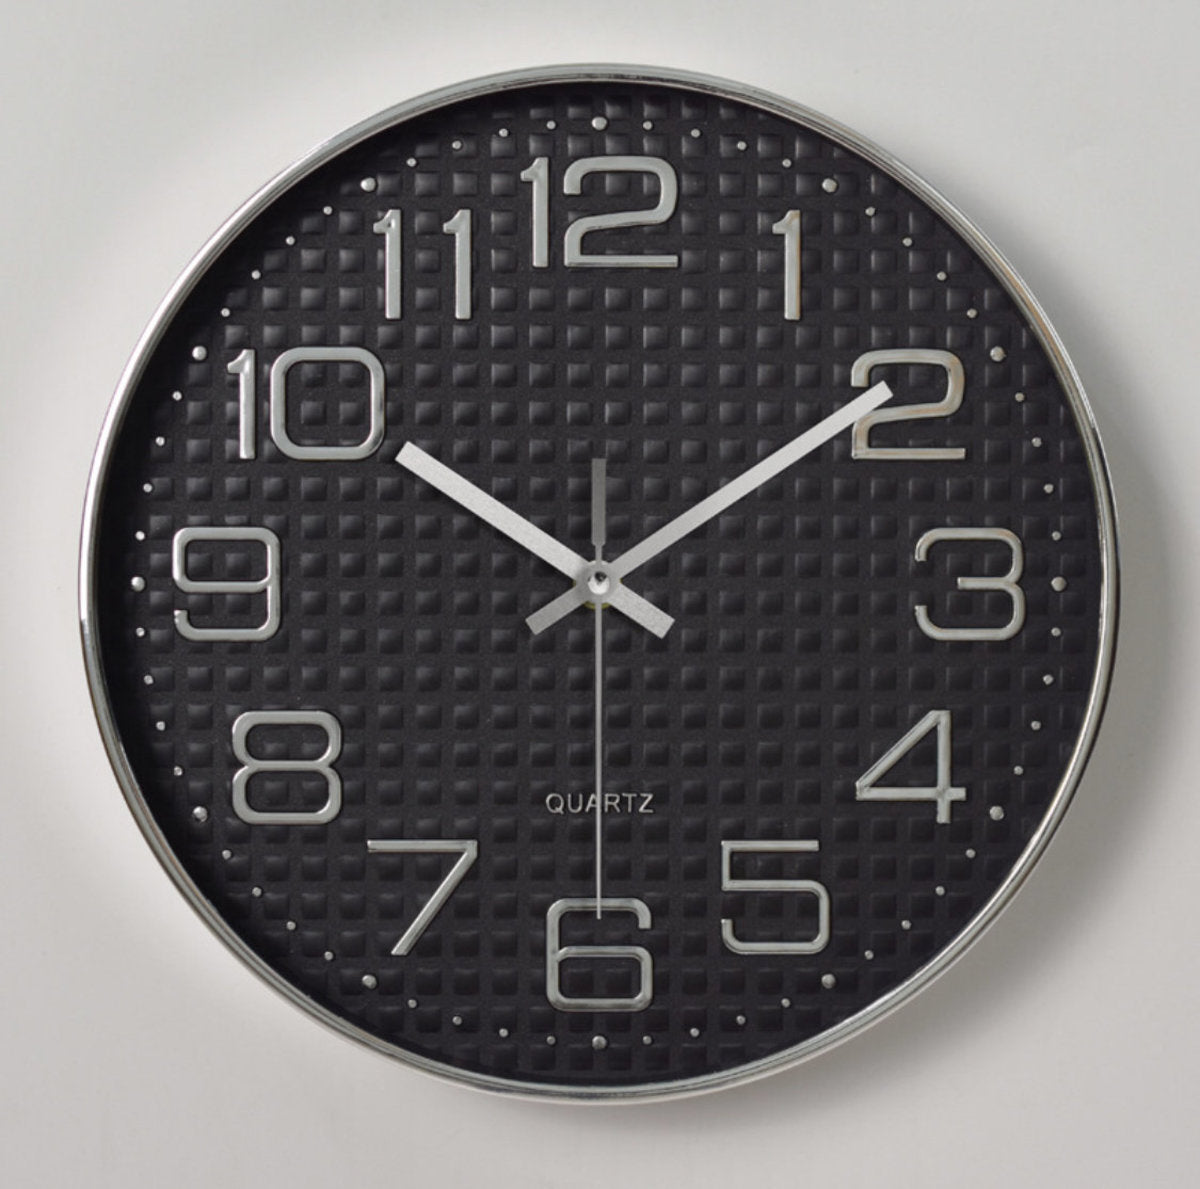 12英寸 塑料掛鐘3d刻度 創意時尚客廳立體數字刻度掛鐘-黑底銀 電子鐘